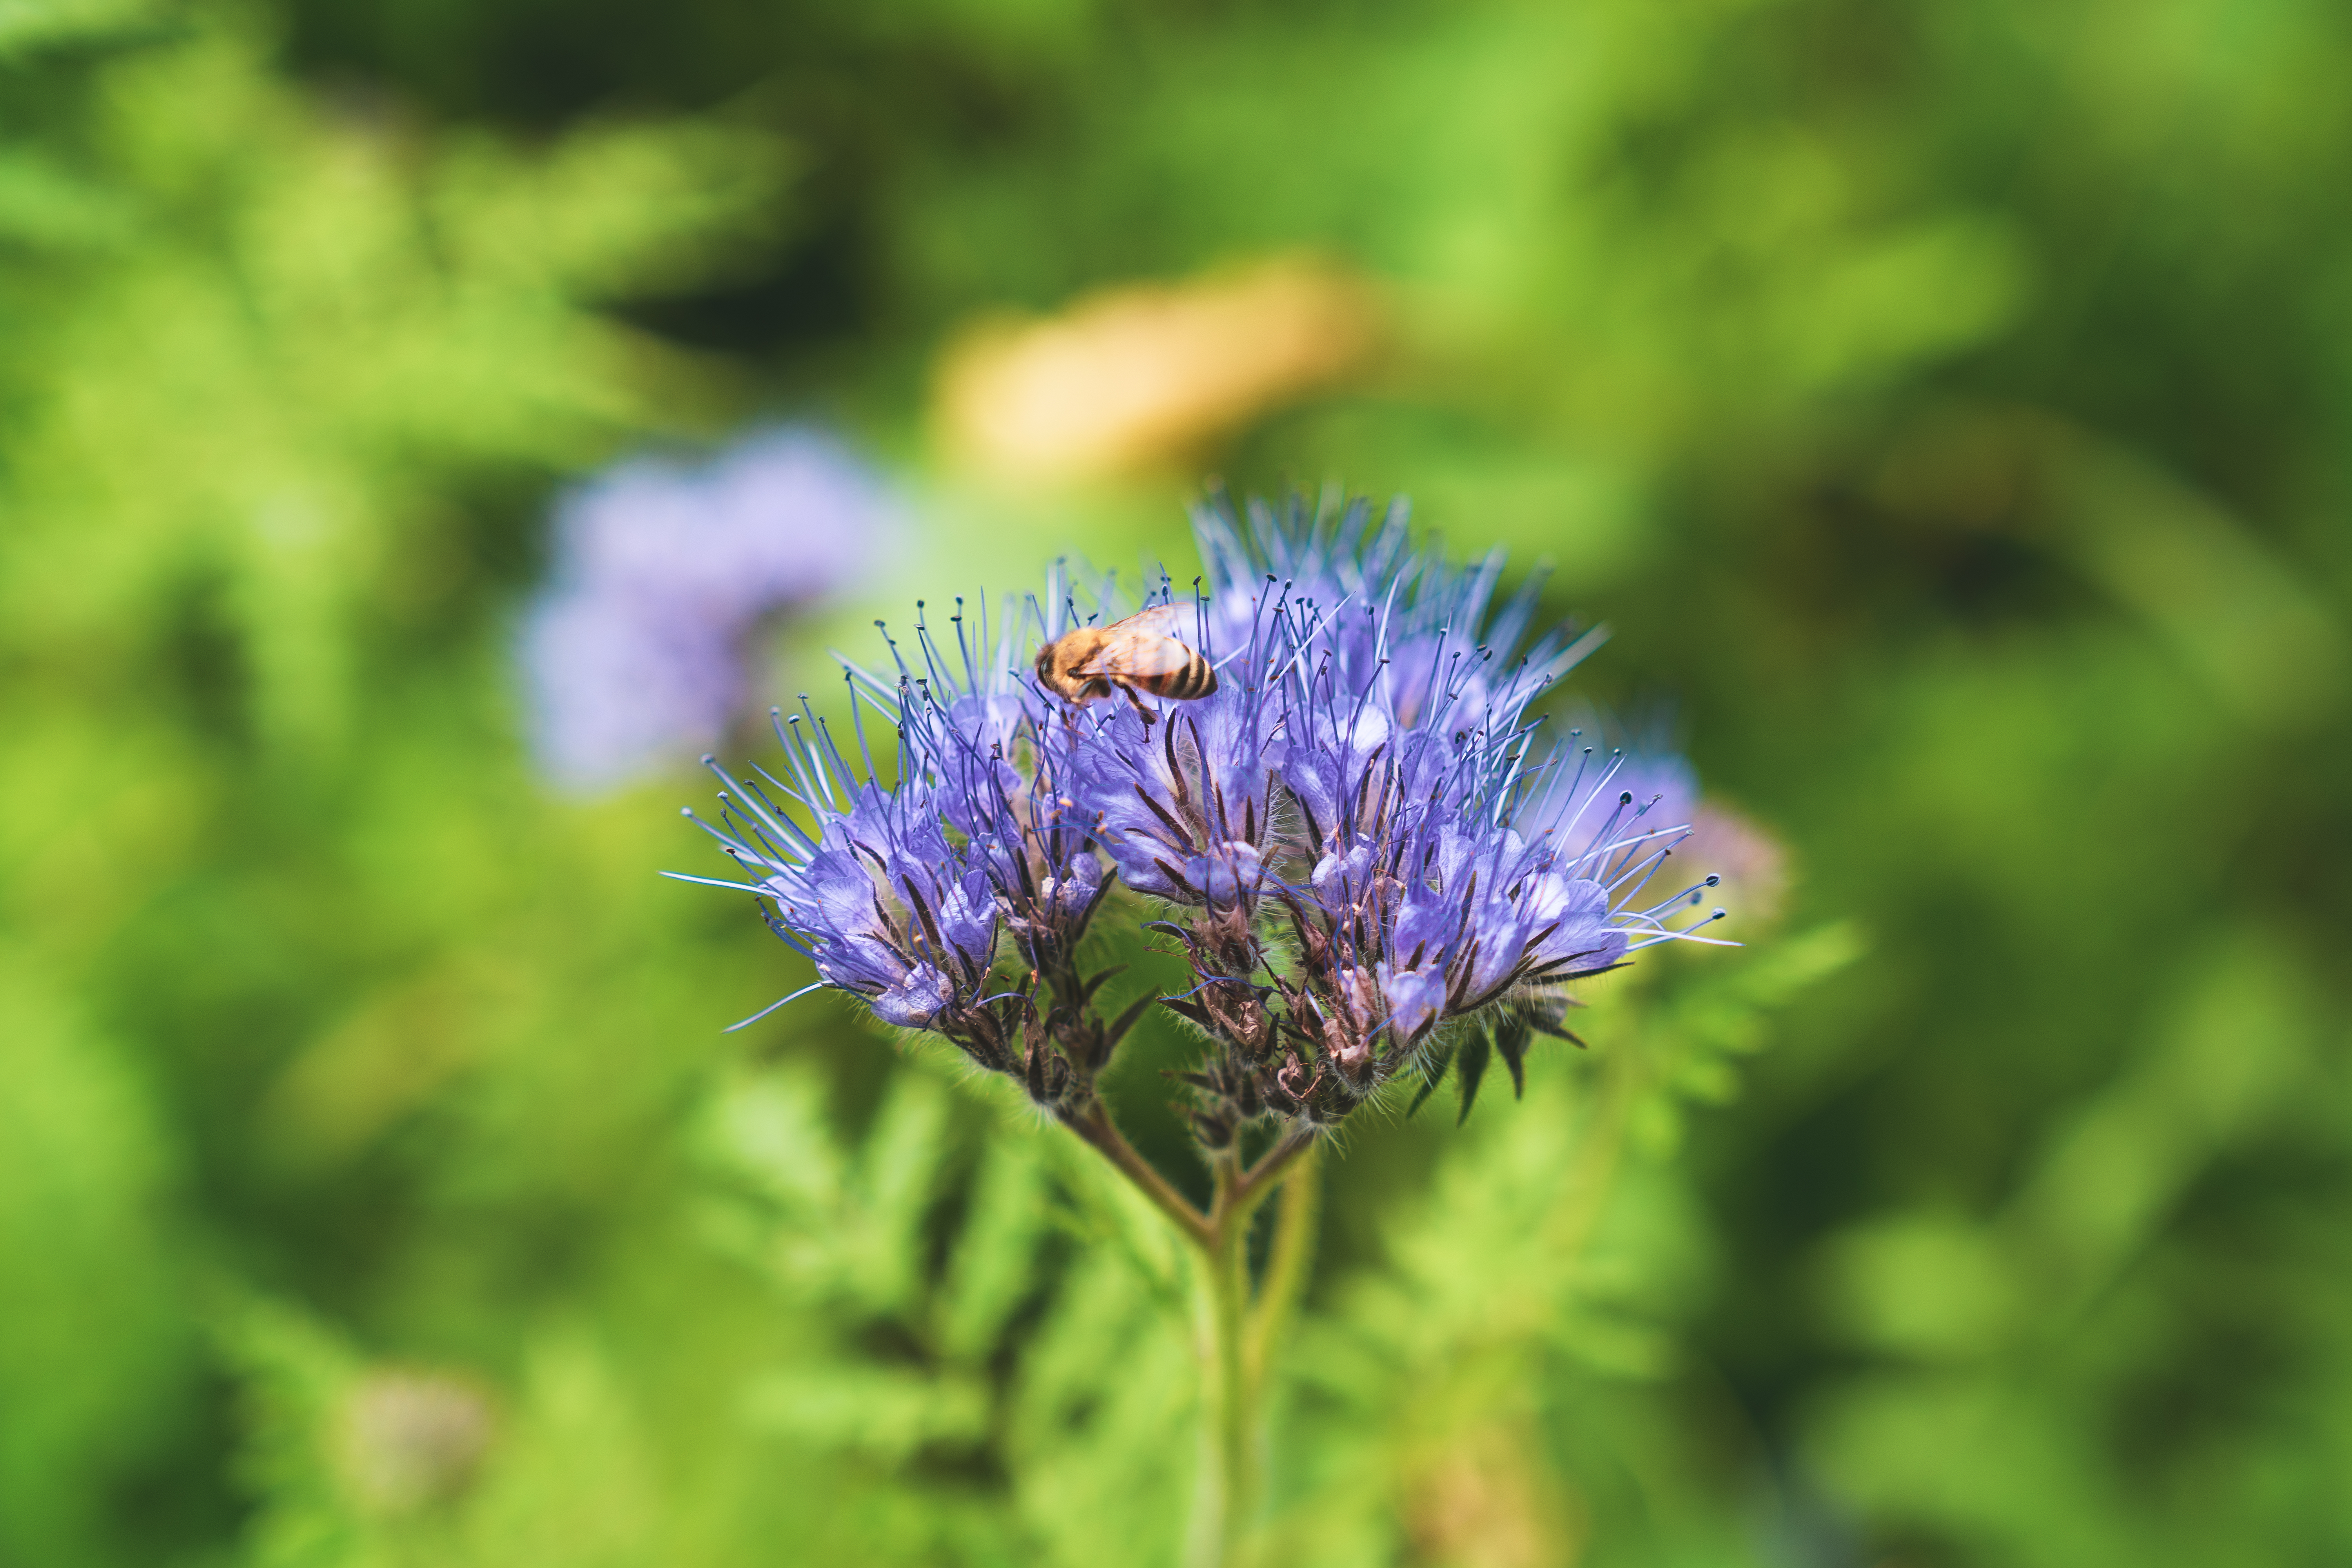 Eine blaue Blume in Nahaufnahme, auf der eine Biene gelandet ist, im Hintergrund grüne Wiese.